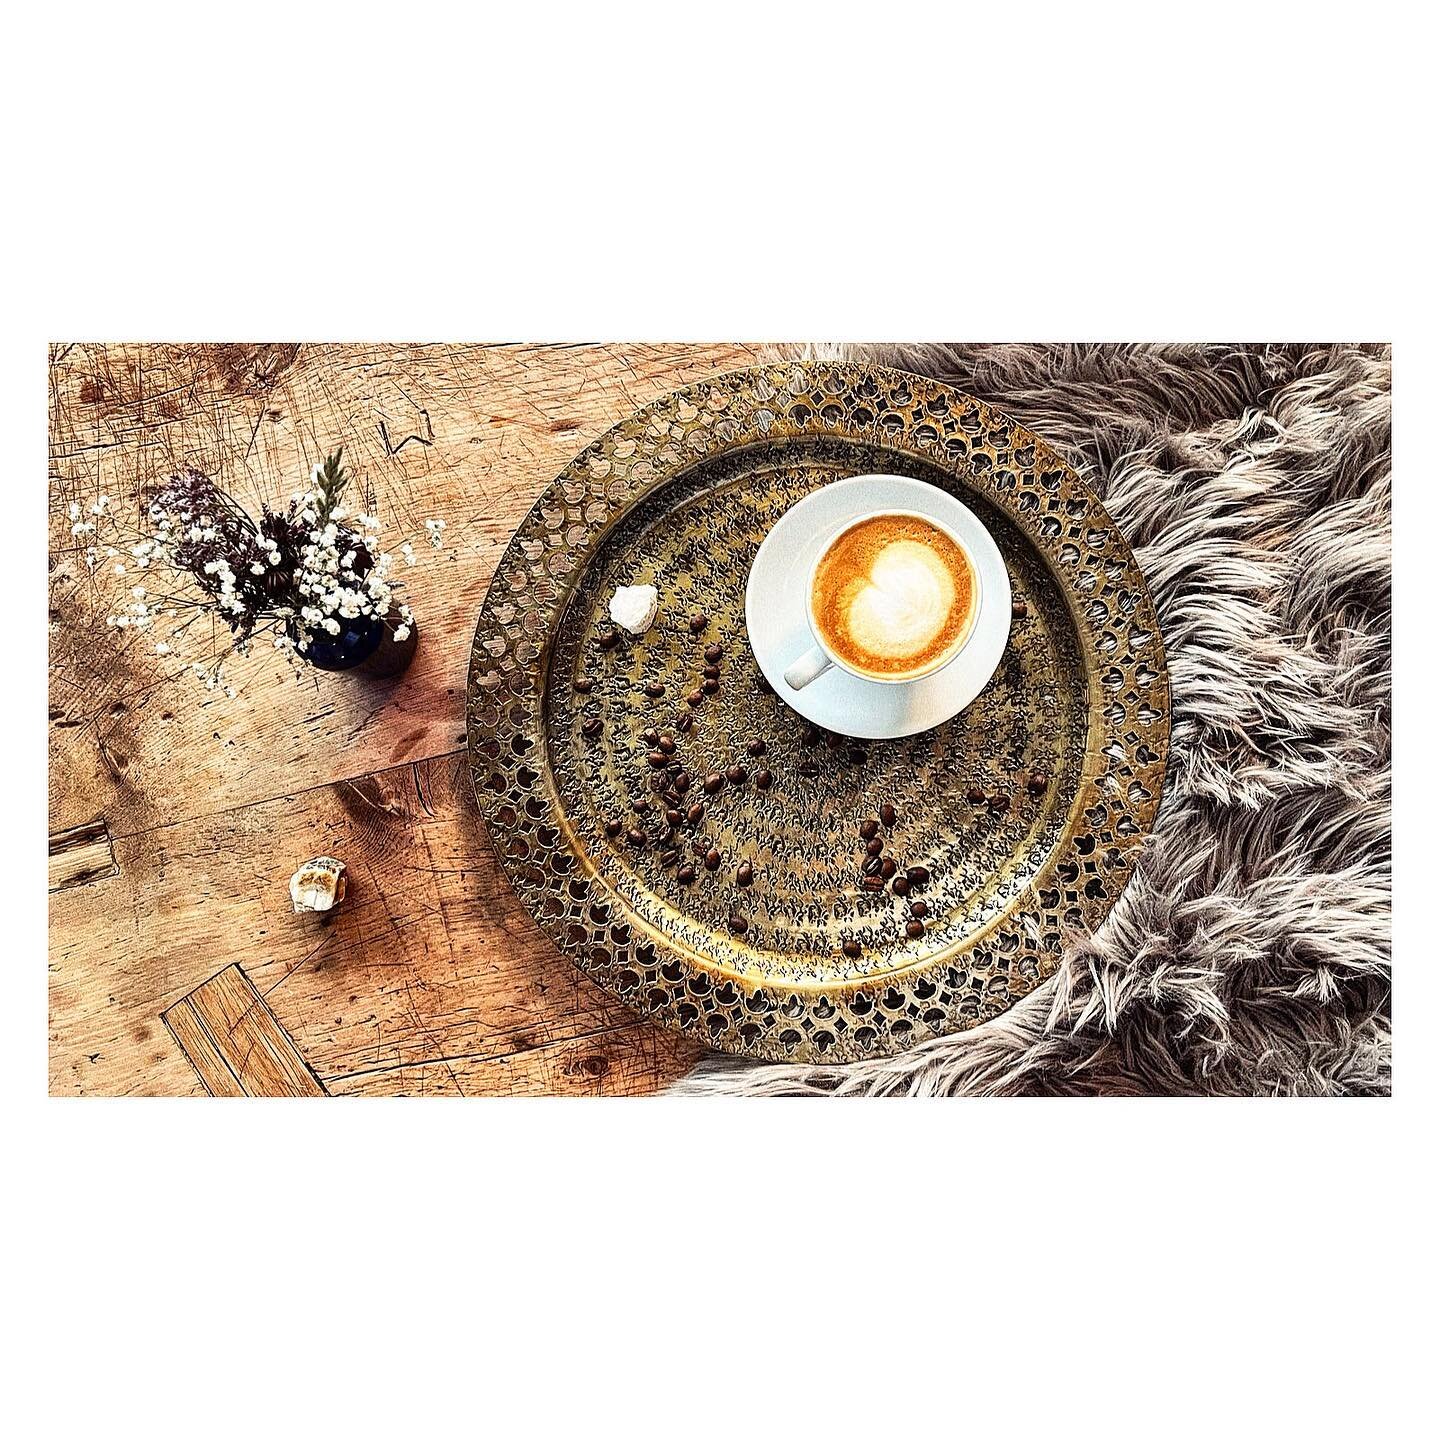 #caffee #coffee #coffeetime #capucino #palaverbarsavognin #palaverbar #savognin #savognin_bivio_albula #savognintourismus #cocktails #cocktail #cocktailbar #cocktaillovers #photography #cocktailphotography #foodphotography #foodfotografie #cocktailph